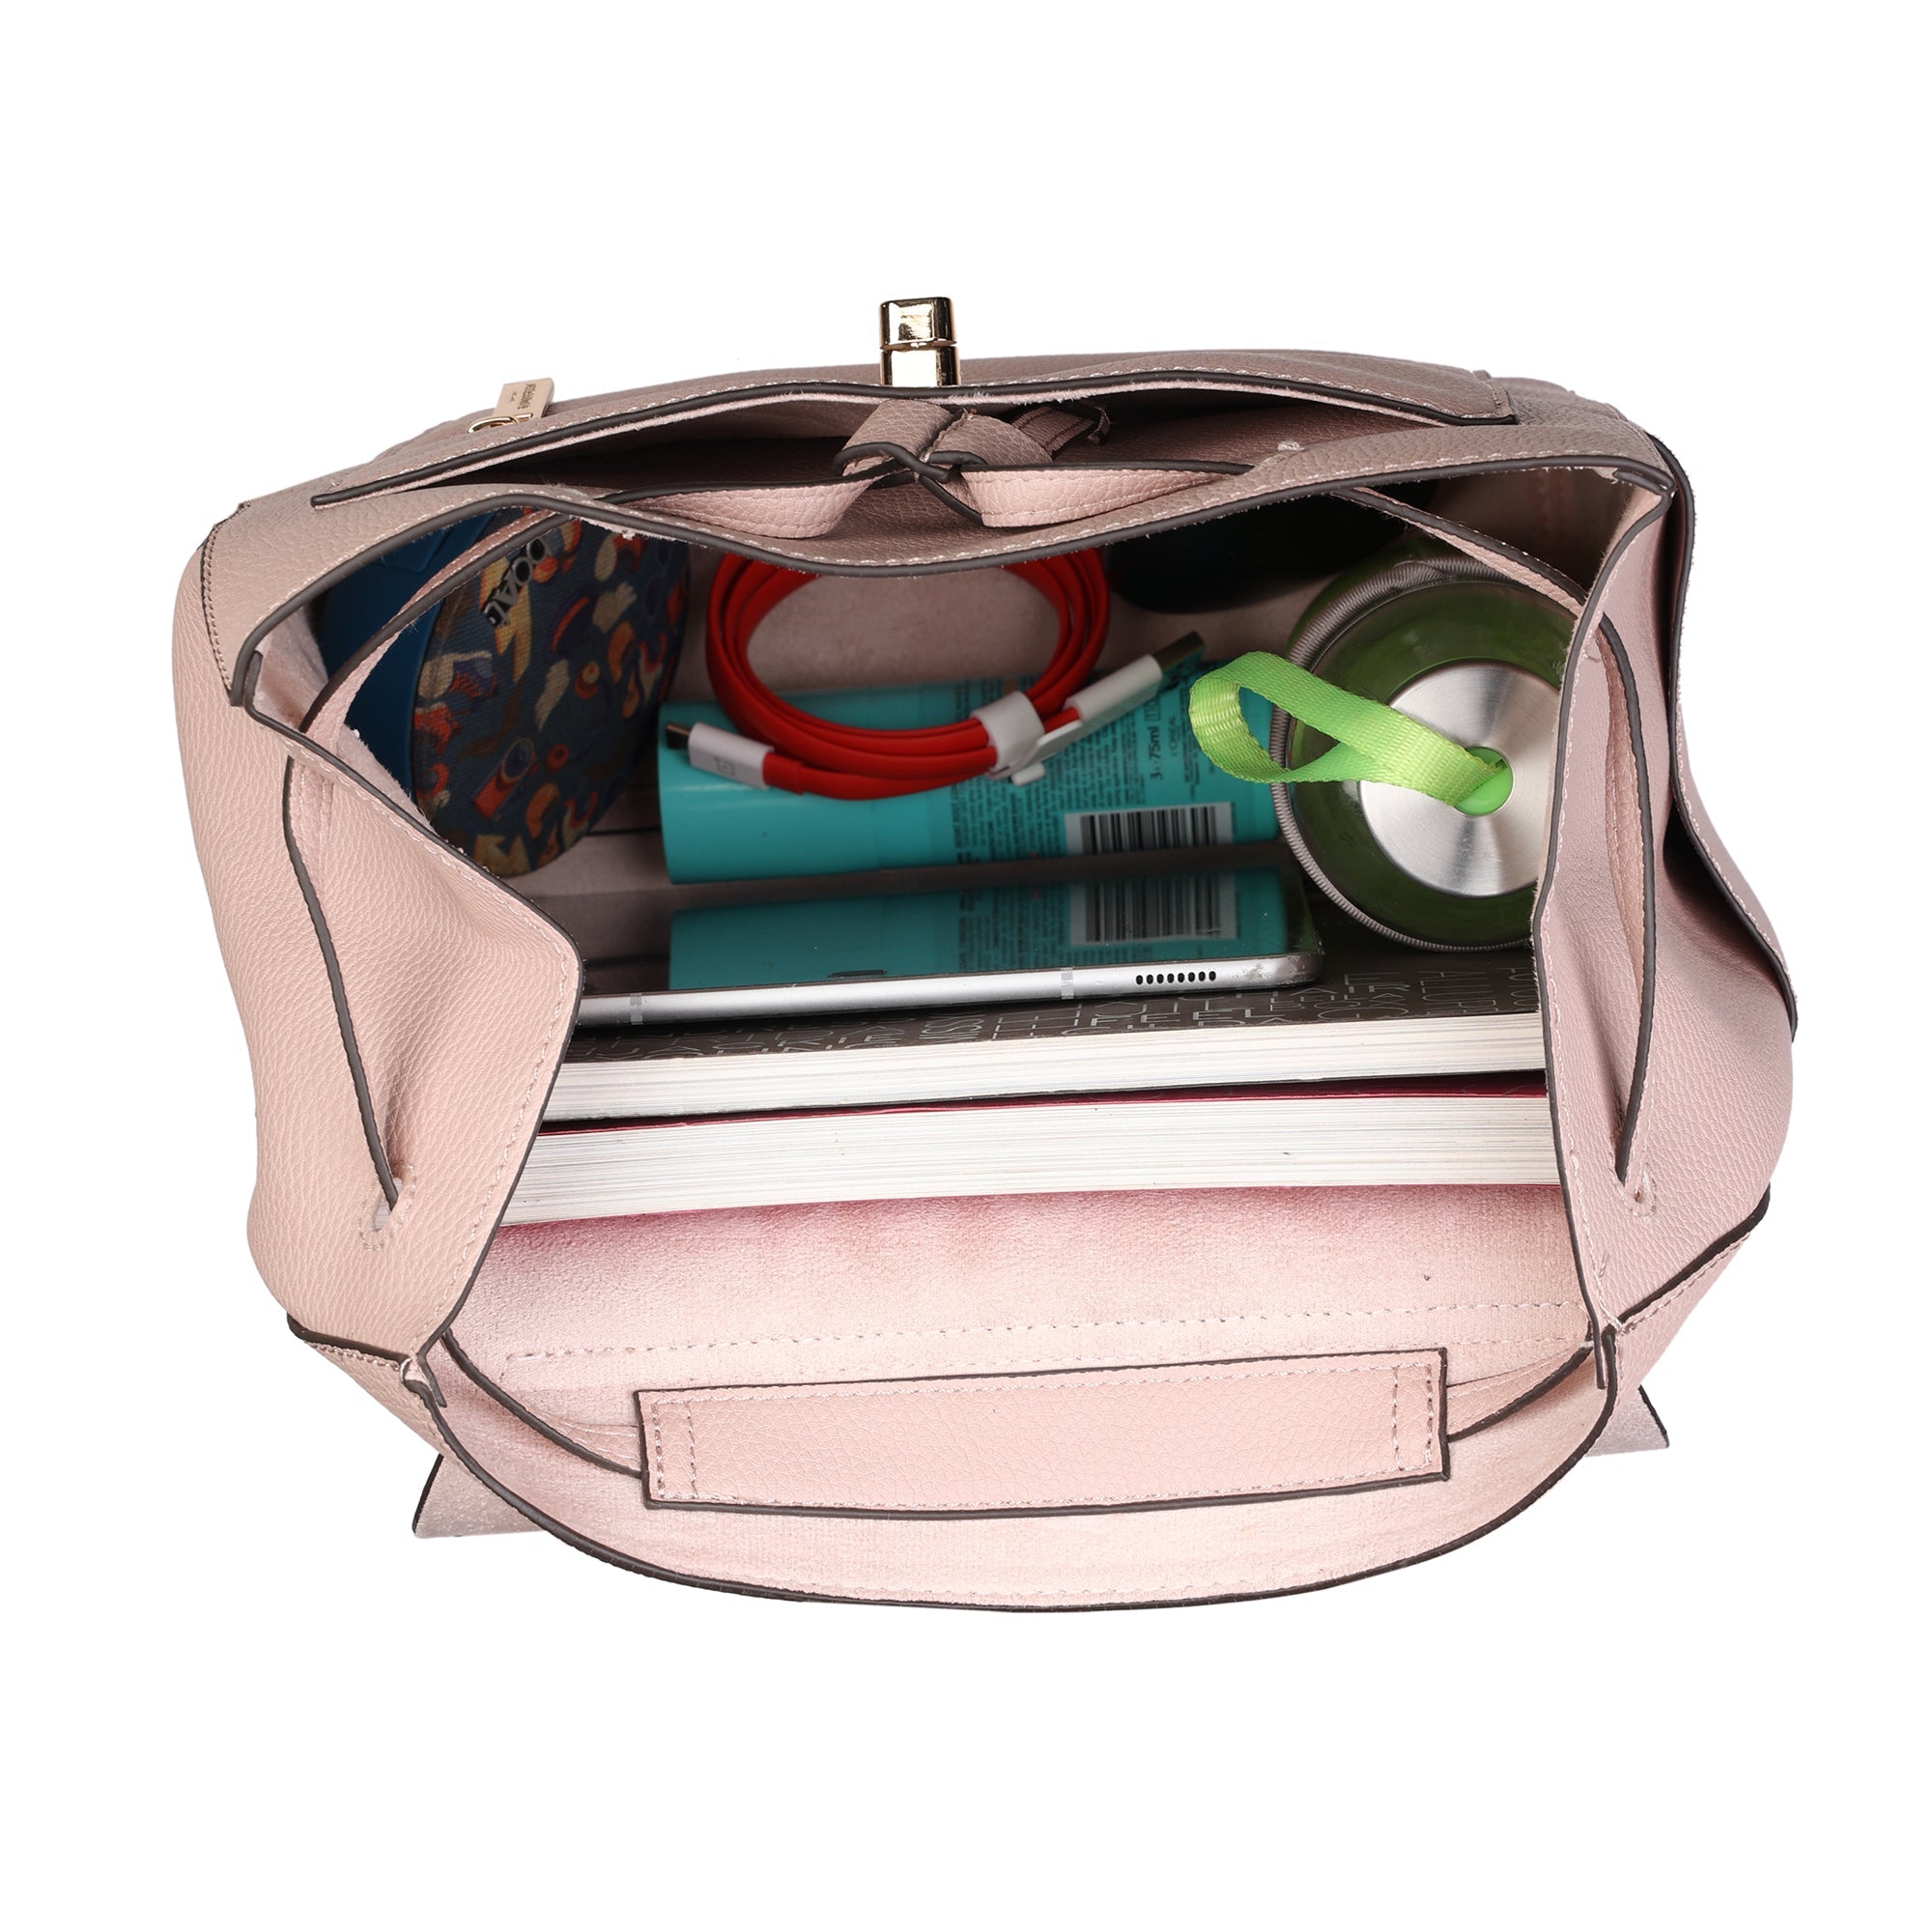 BRENICE Solid Red Designer Handbag Multi Function Crossbody Bag | eBay